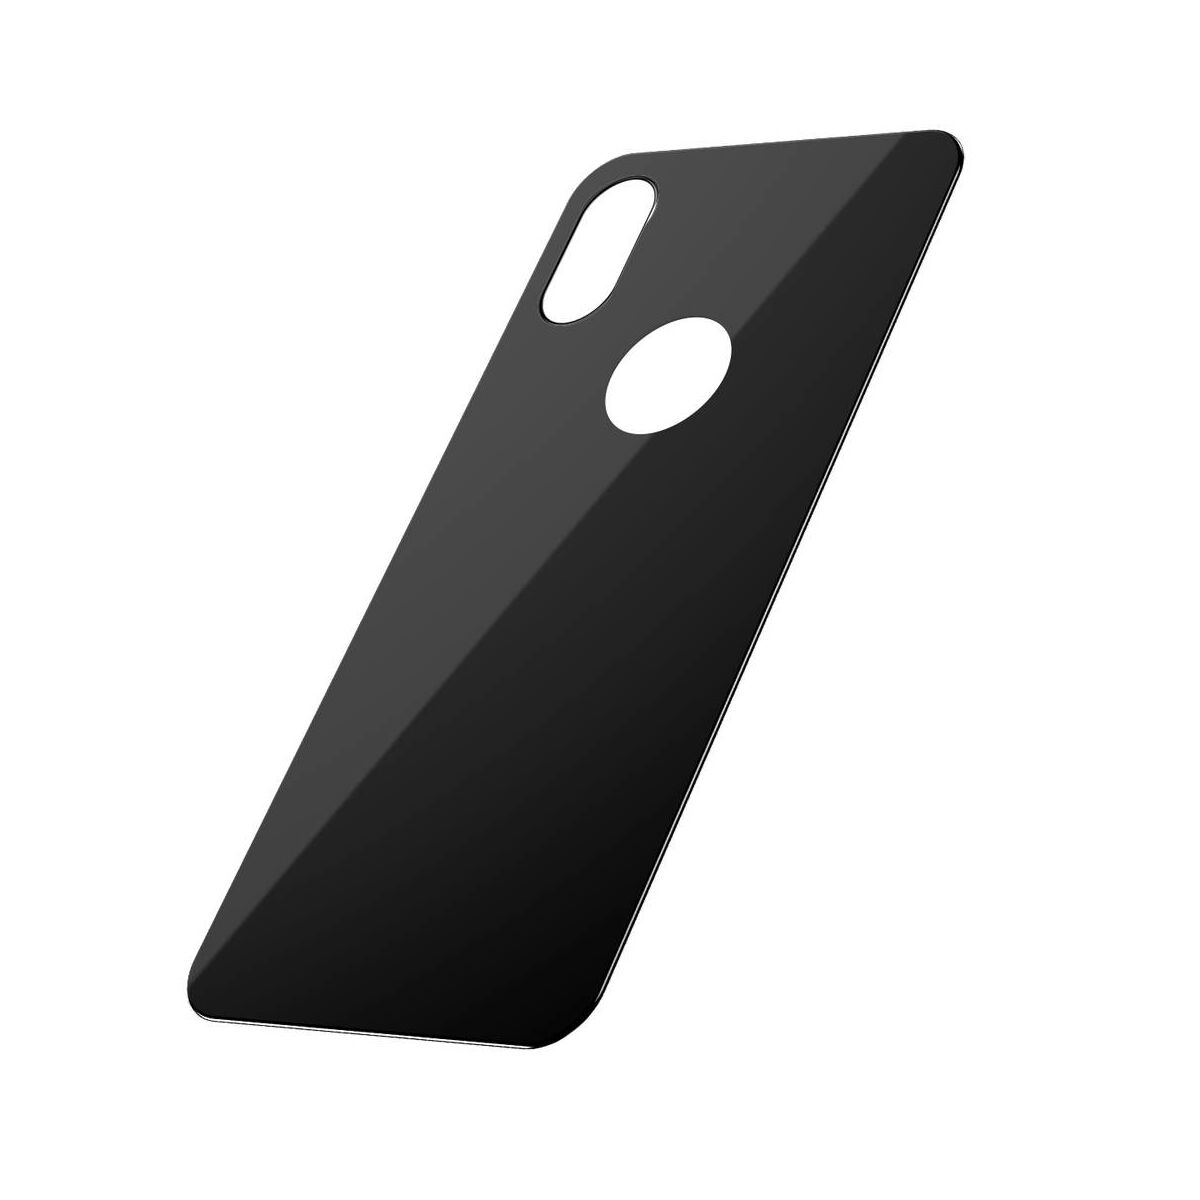 Kép 3/9 - Baseus iPhone XS (5.8") 0.3 mm, teljes lefedésre edzett üveg hátlap védő fólia, fekete (SGAPIPH58-BM01)